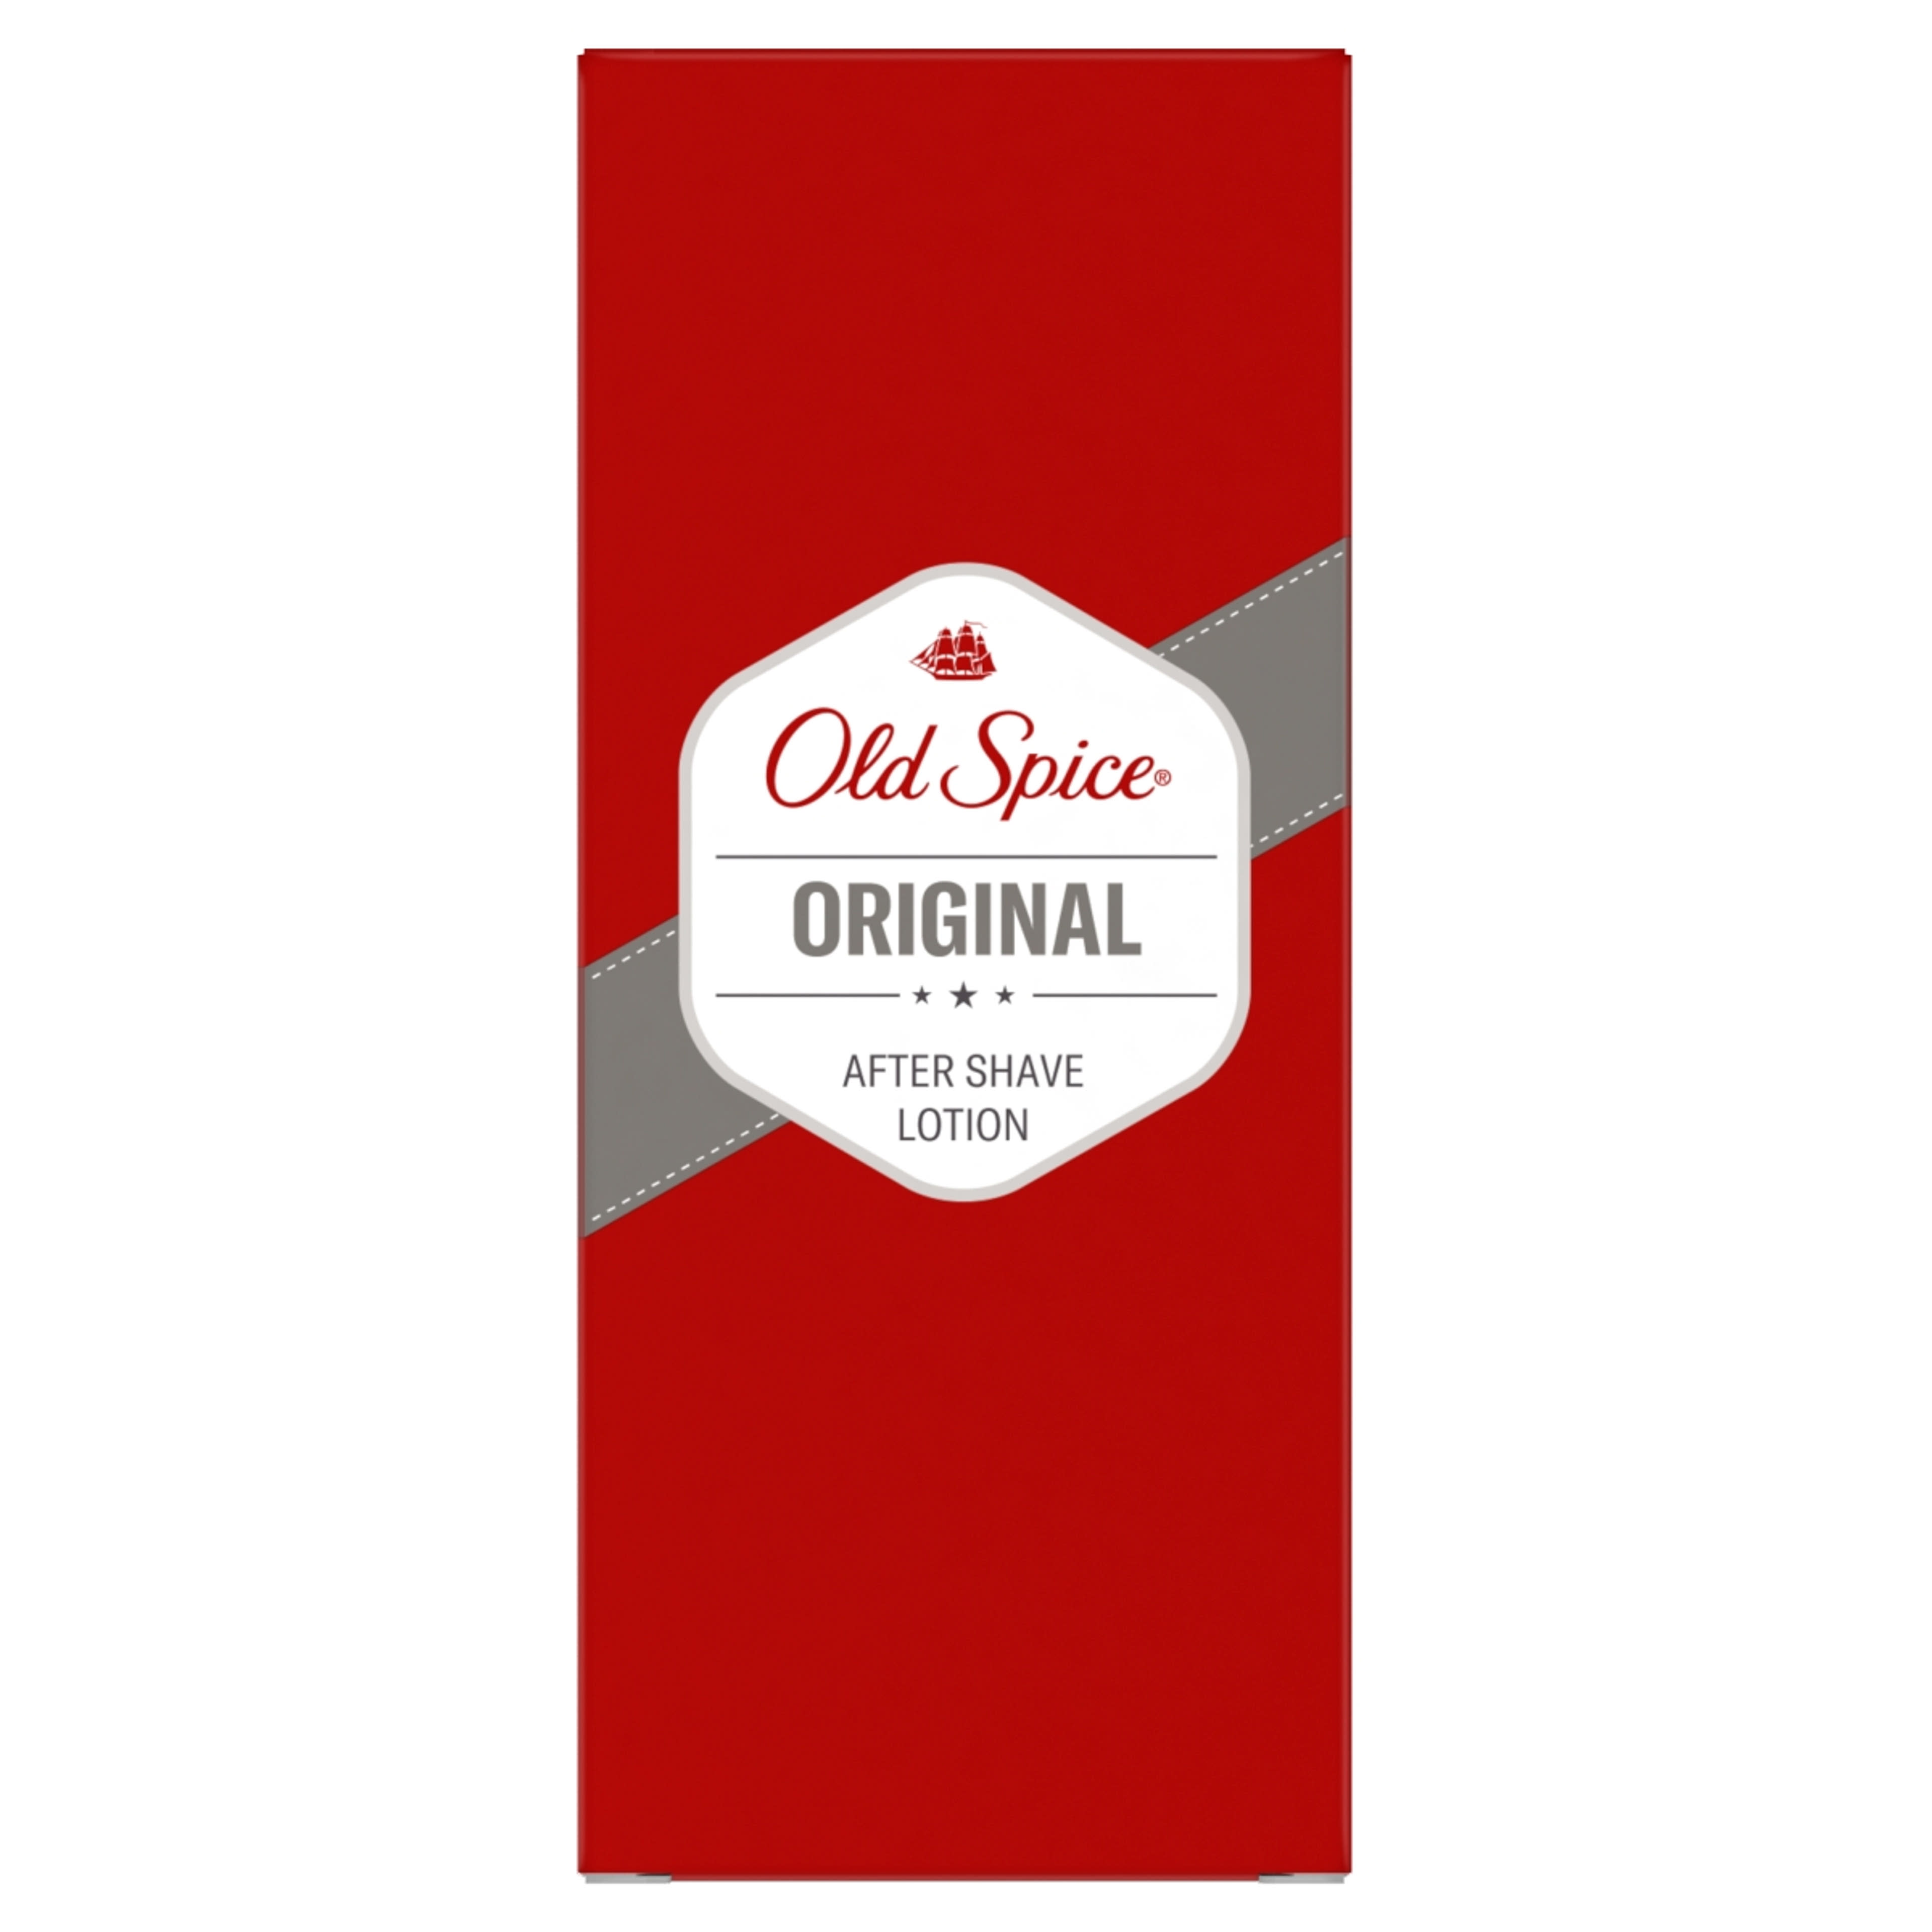 Old Spice Original borotválkozás utáni arcszesz - 100 ml